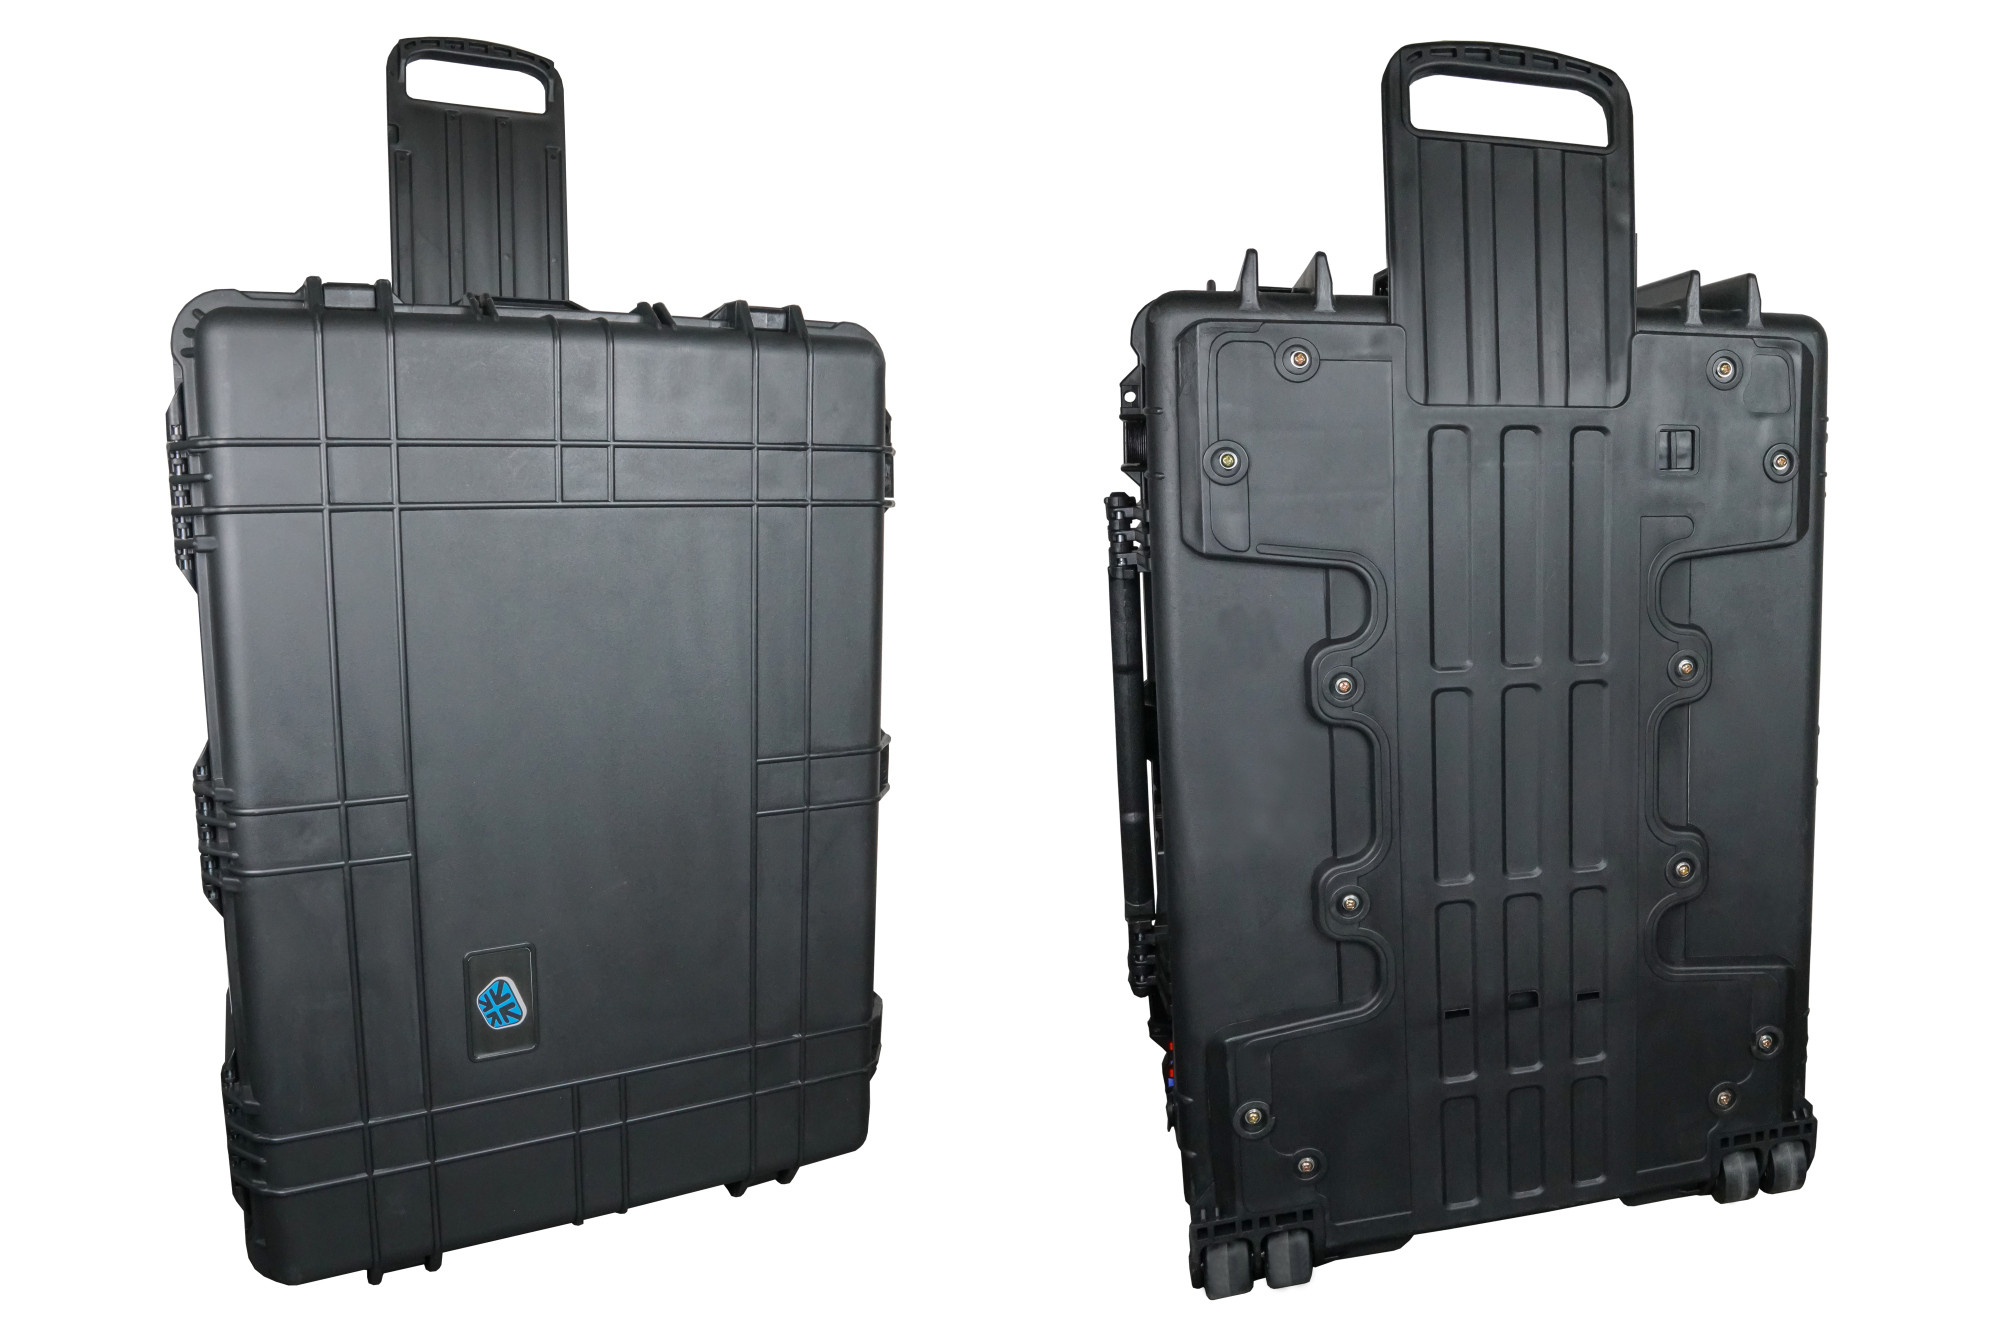 Good-Connections-R-ATON2-T16C-Tablet-Ladetrolley-USB-CTM-Ausfuhrung-aktive-Beluftung-Zusatzsteckdosen-schwarz